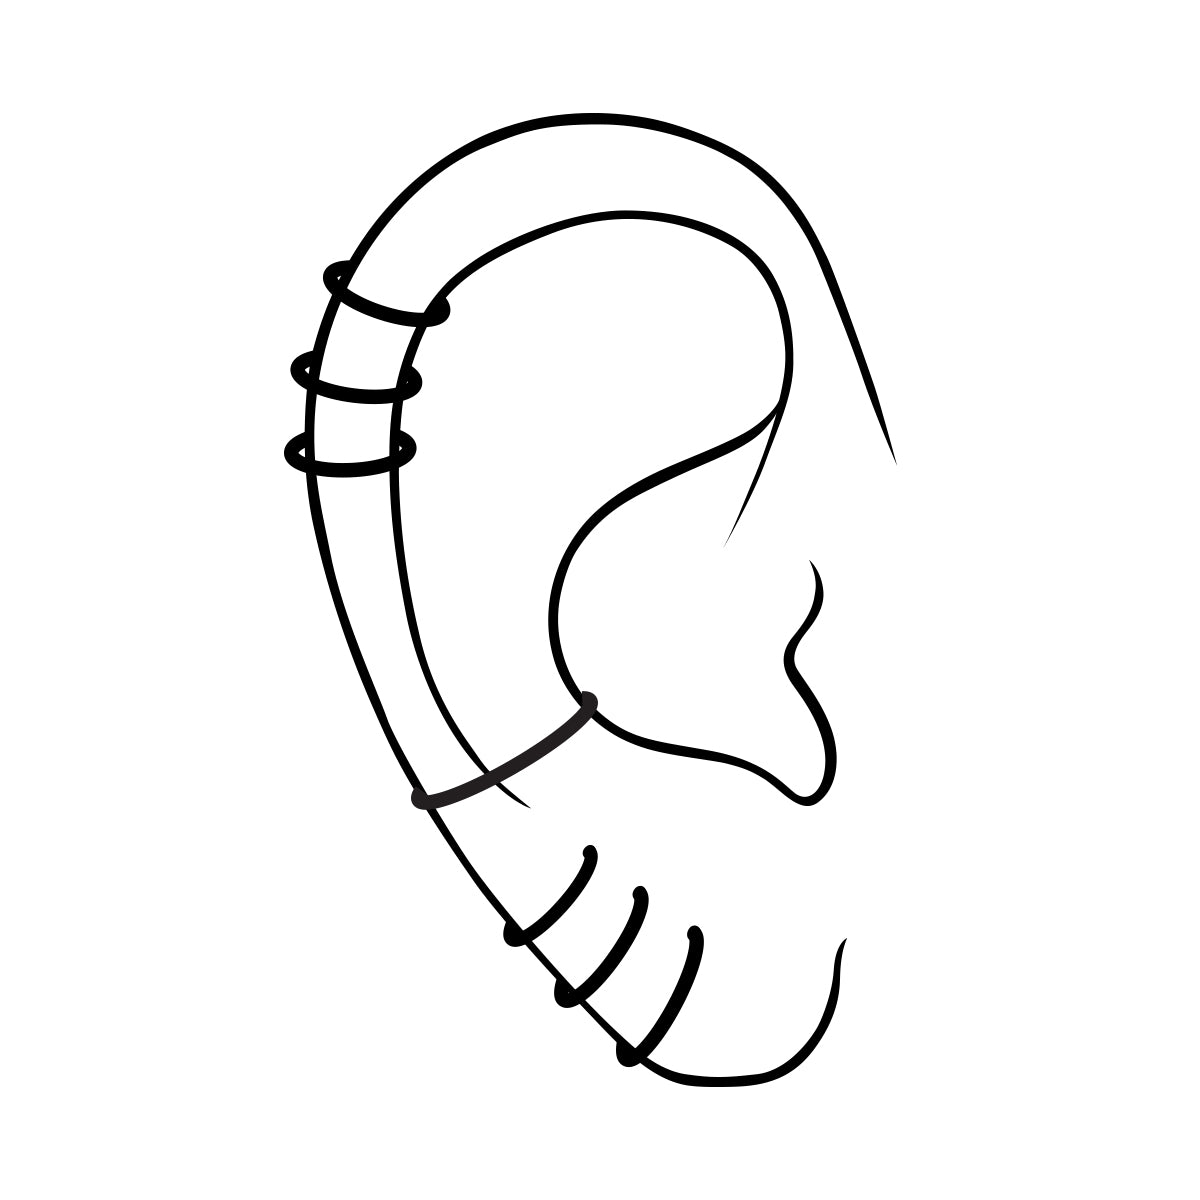 Steel hoop earring with kite and black enamel